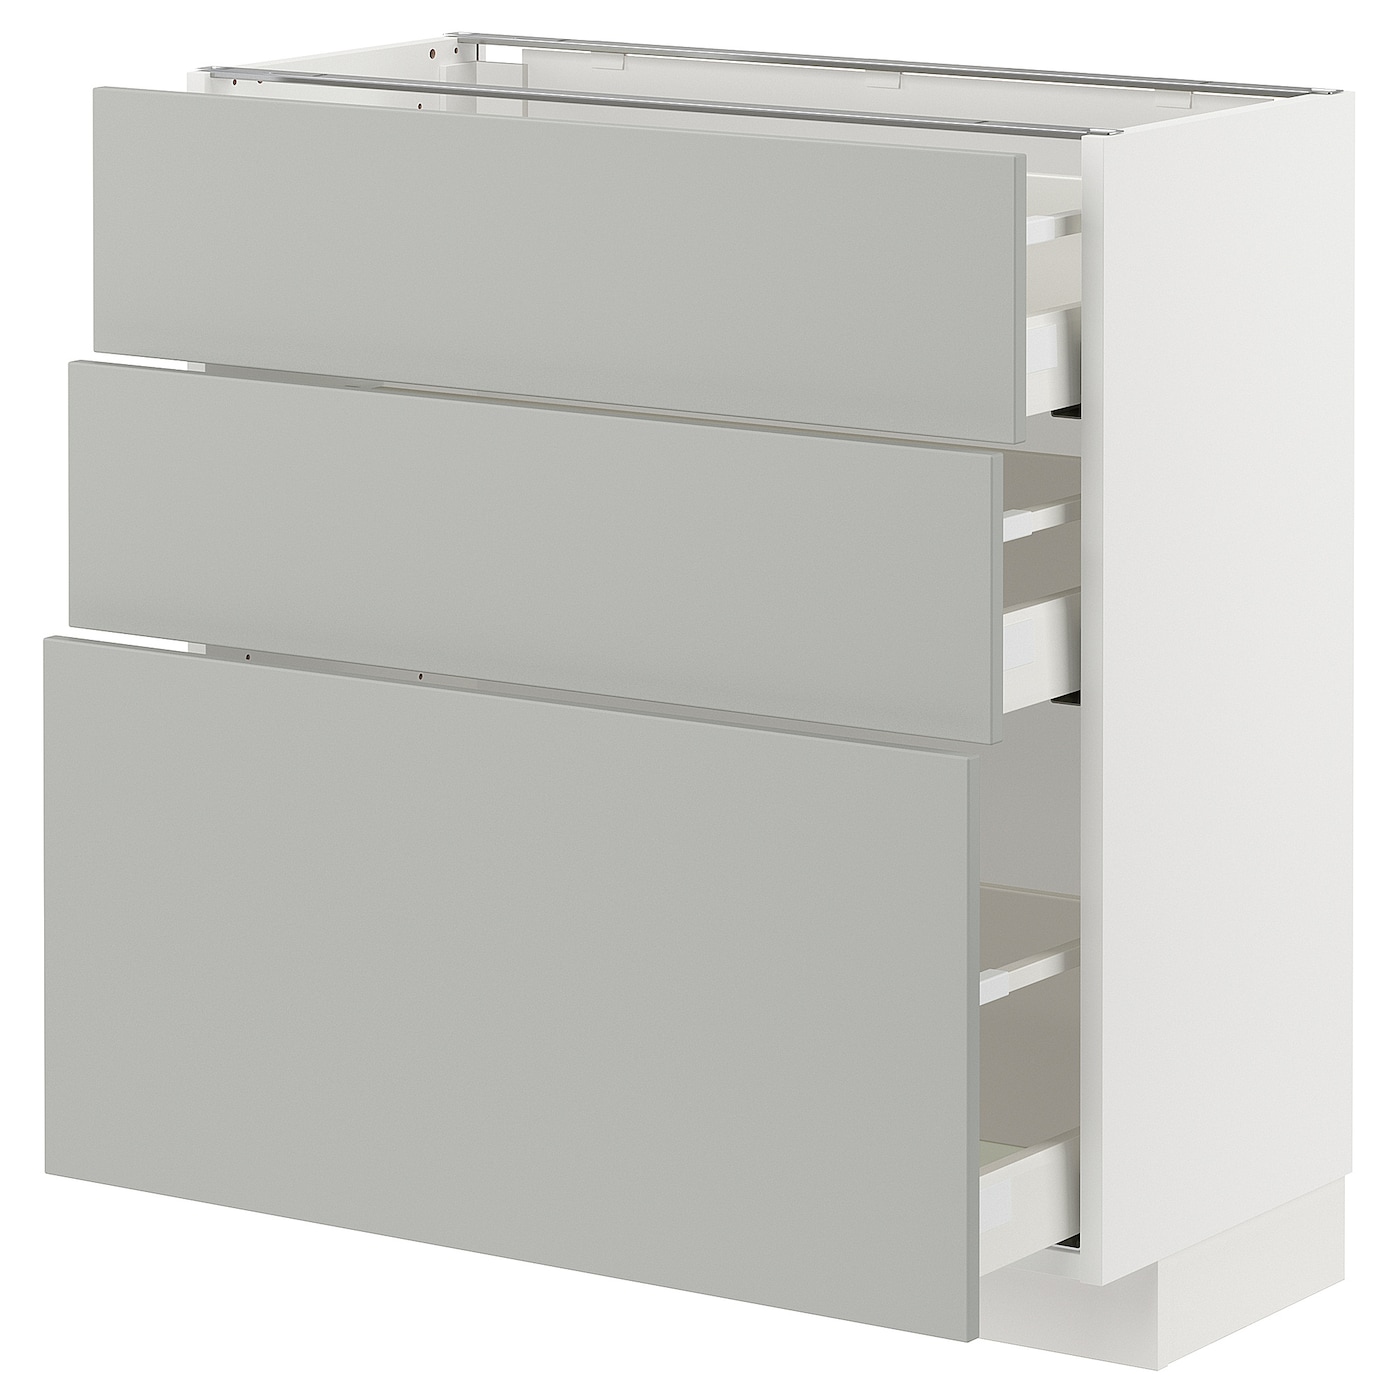 Напольный шкаф - METOD / MAXIMERA IKEA/ МЕТОД/ МАКСИМЕРА ИКЕА,  88х80 см, белый/серый